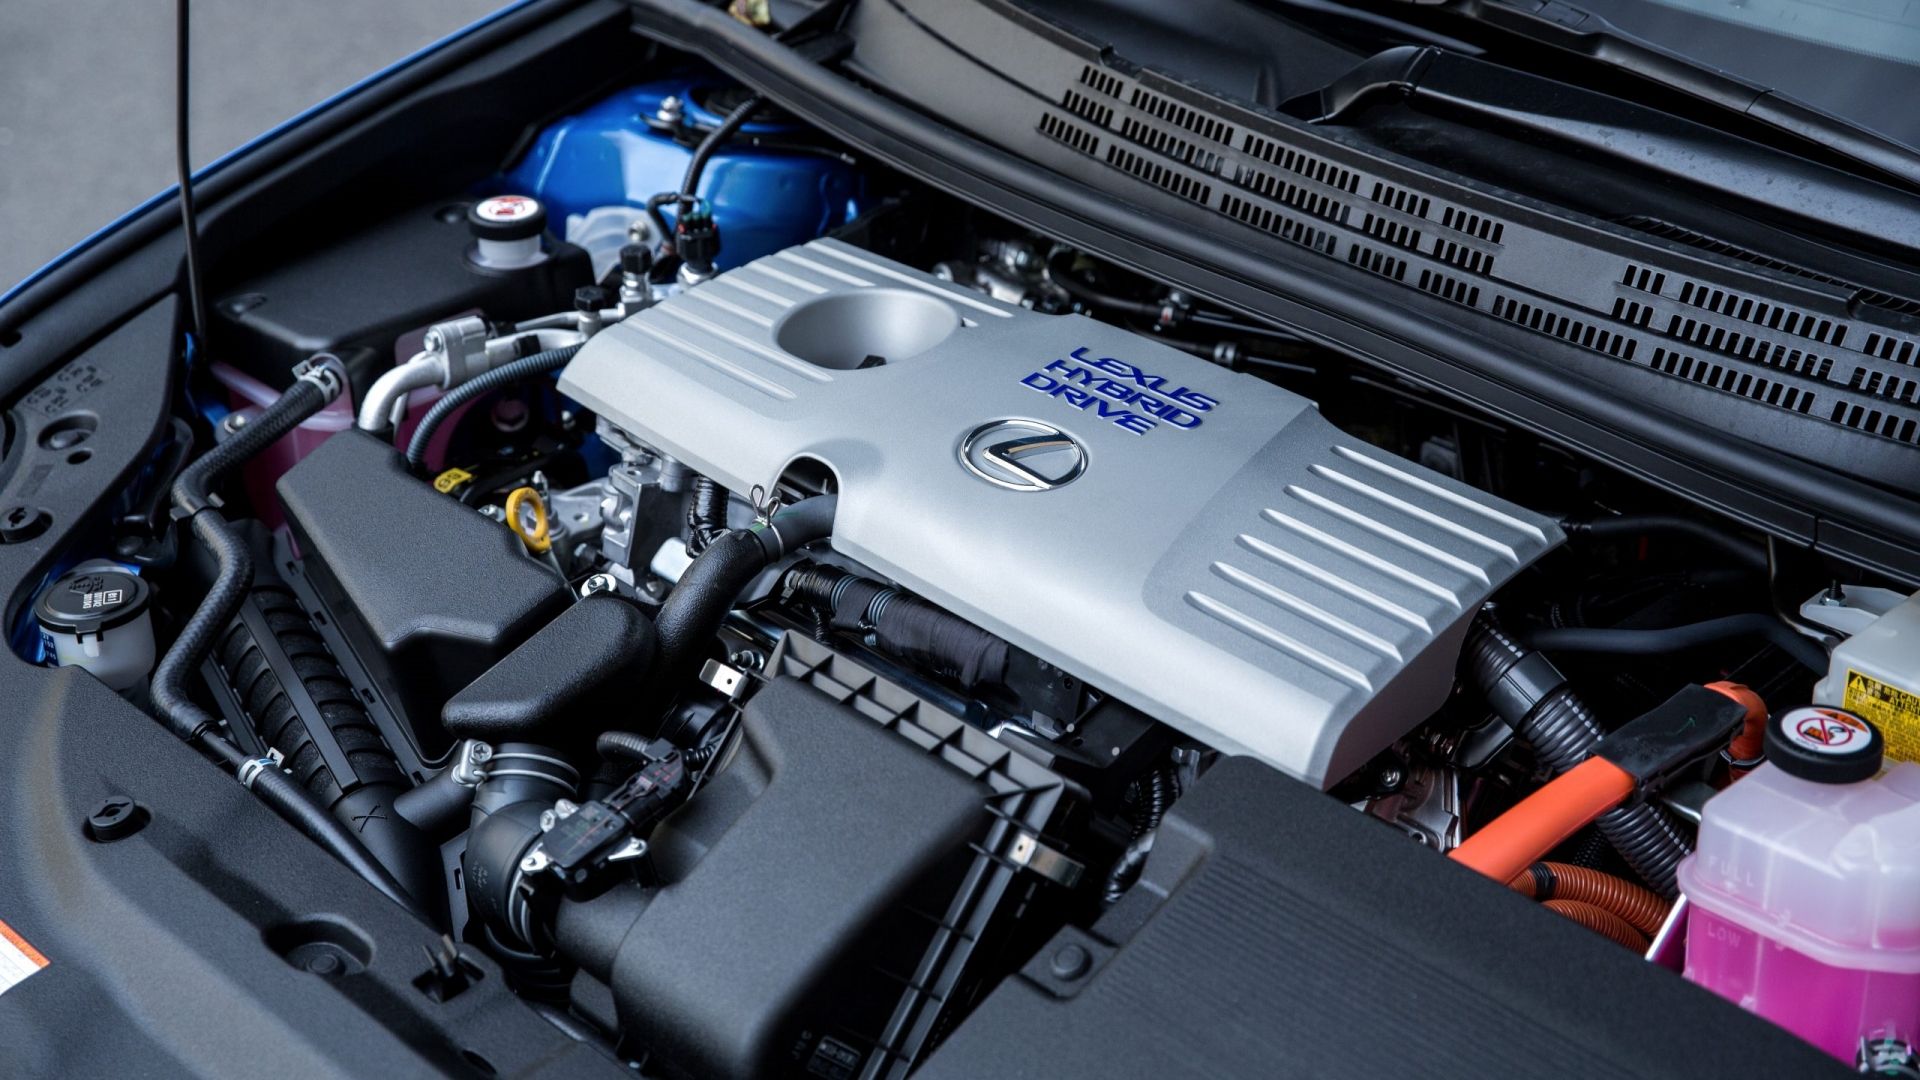 2016 Lexus CT 200h in blue engine bay detail shot